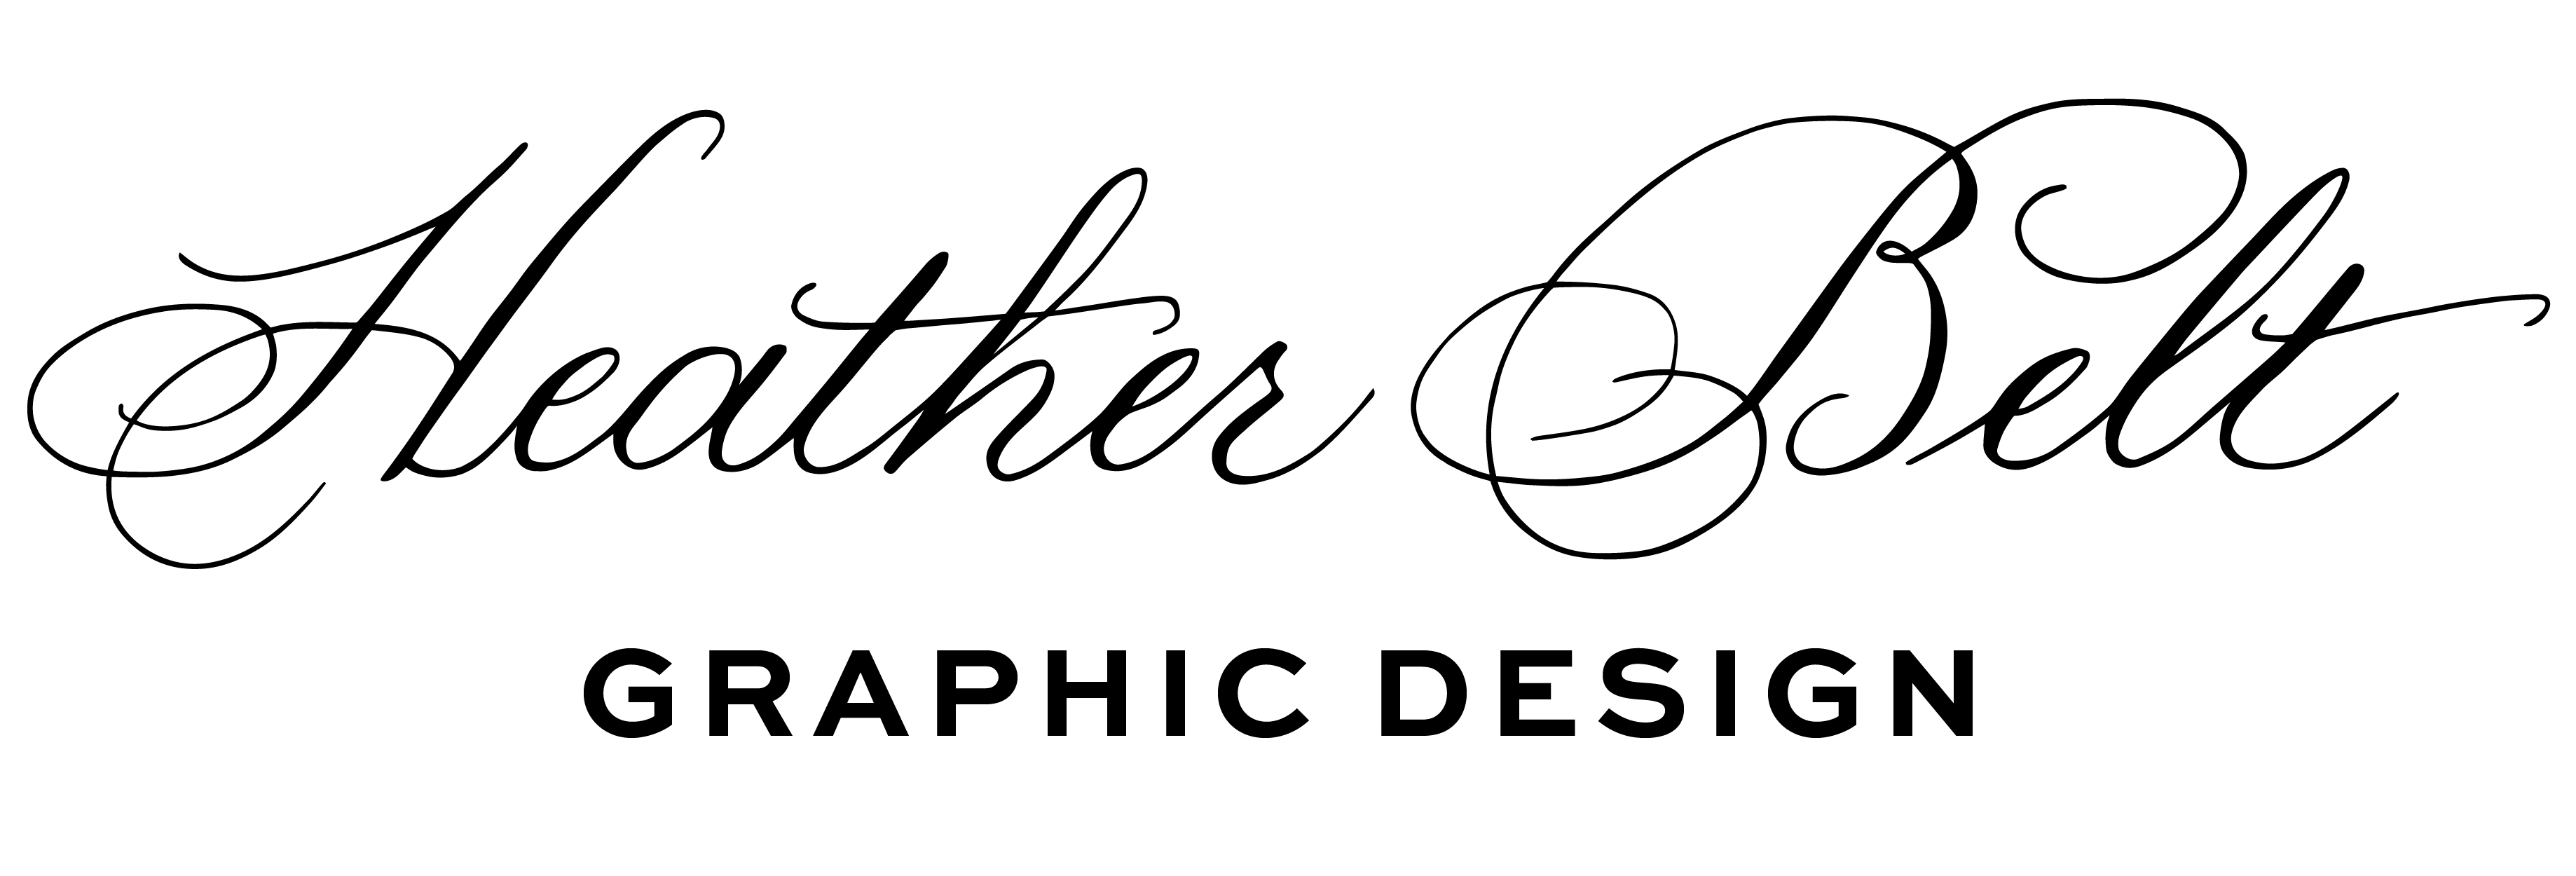 Heather Belt Graphic Design